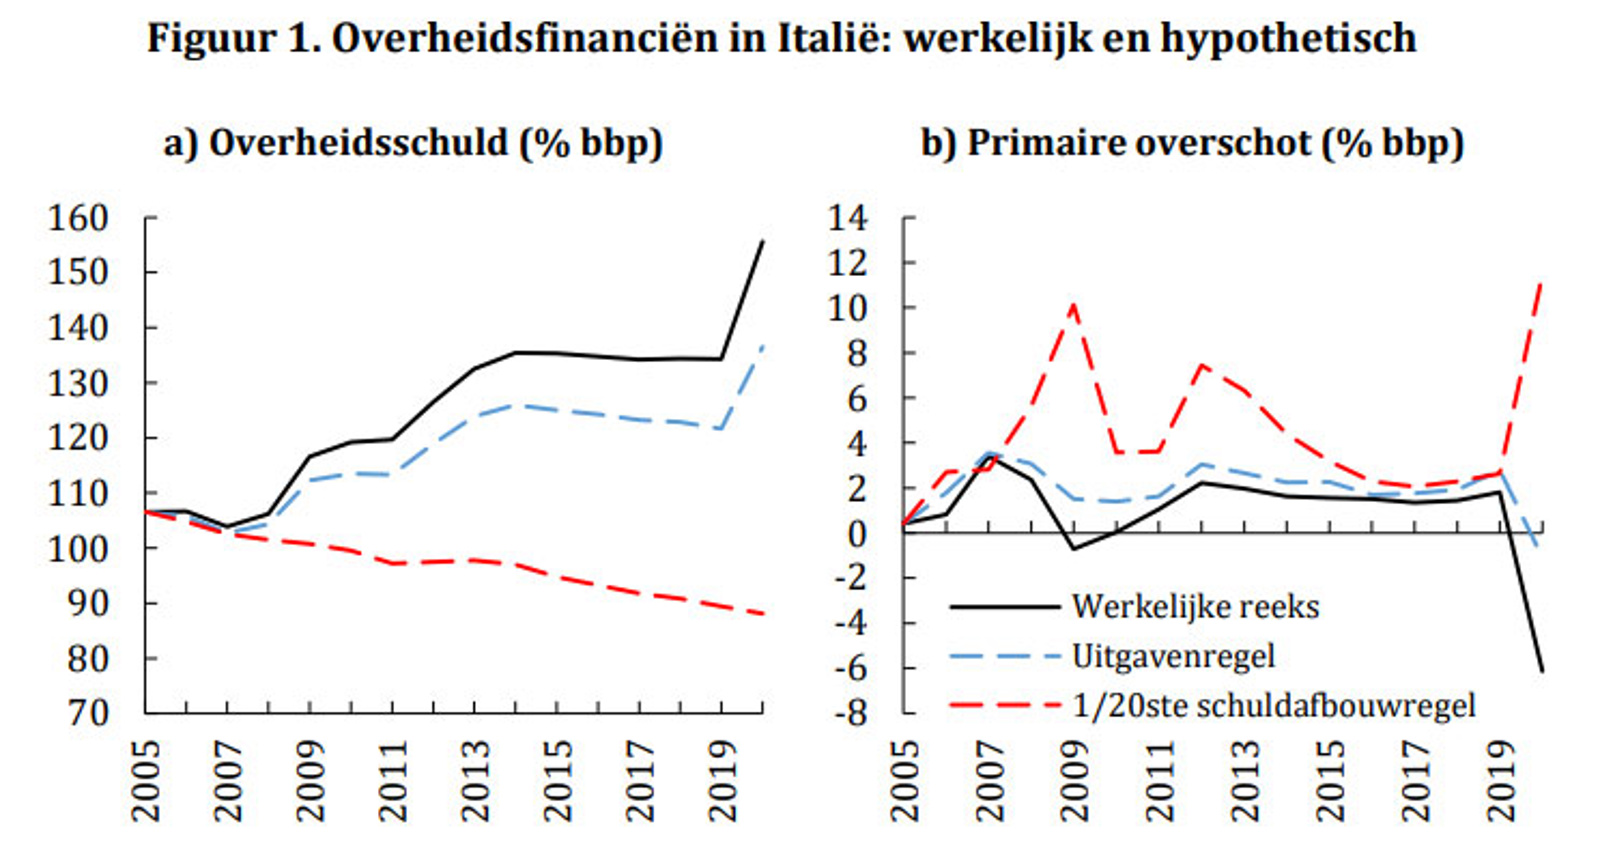 Overheidsfinancien in Italie: werkelijk en hypothetisch